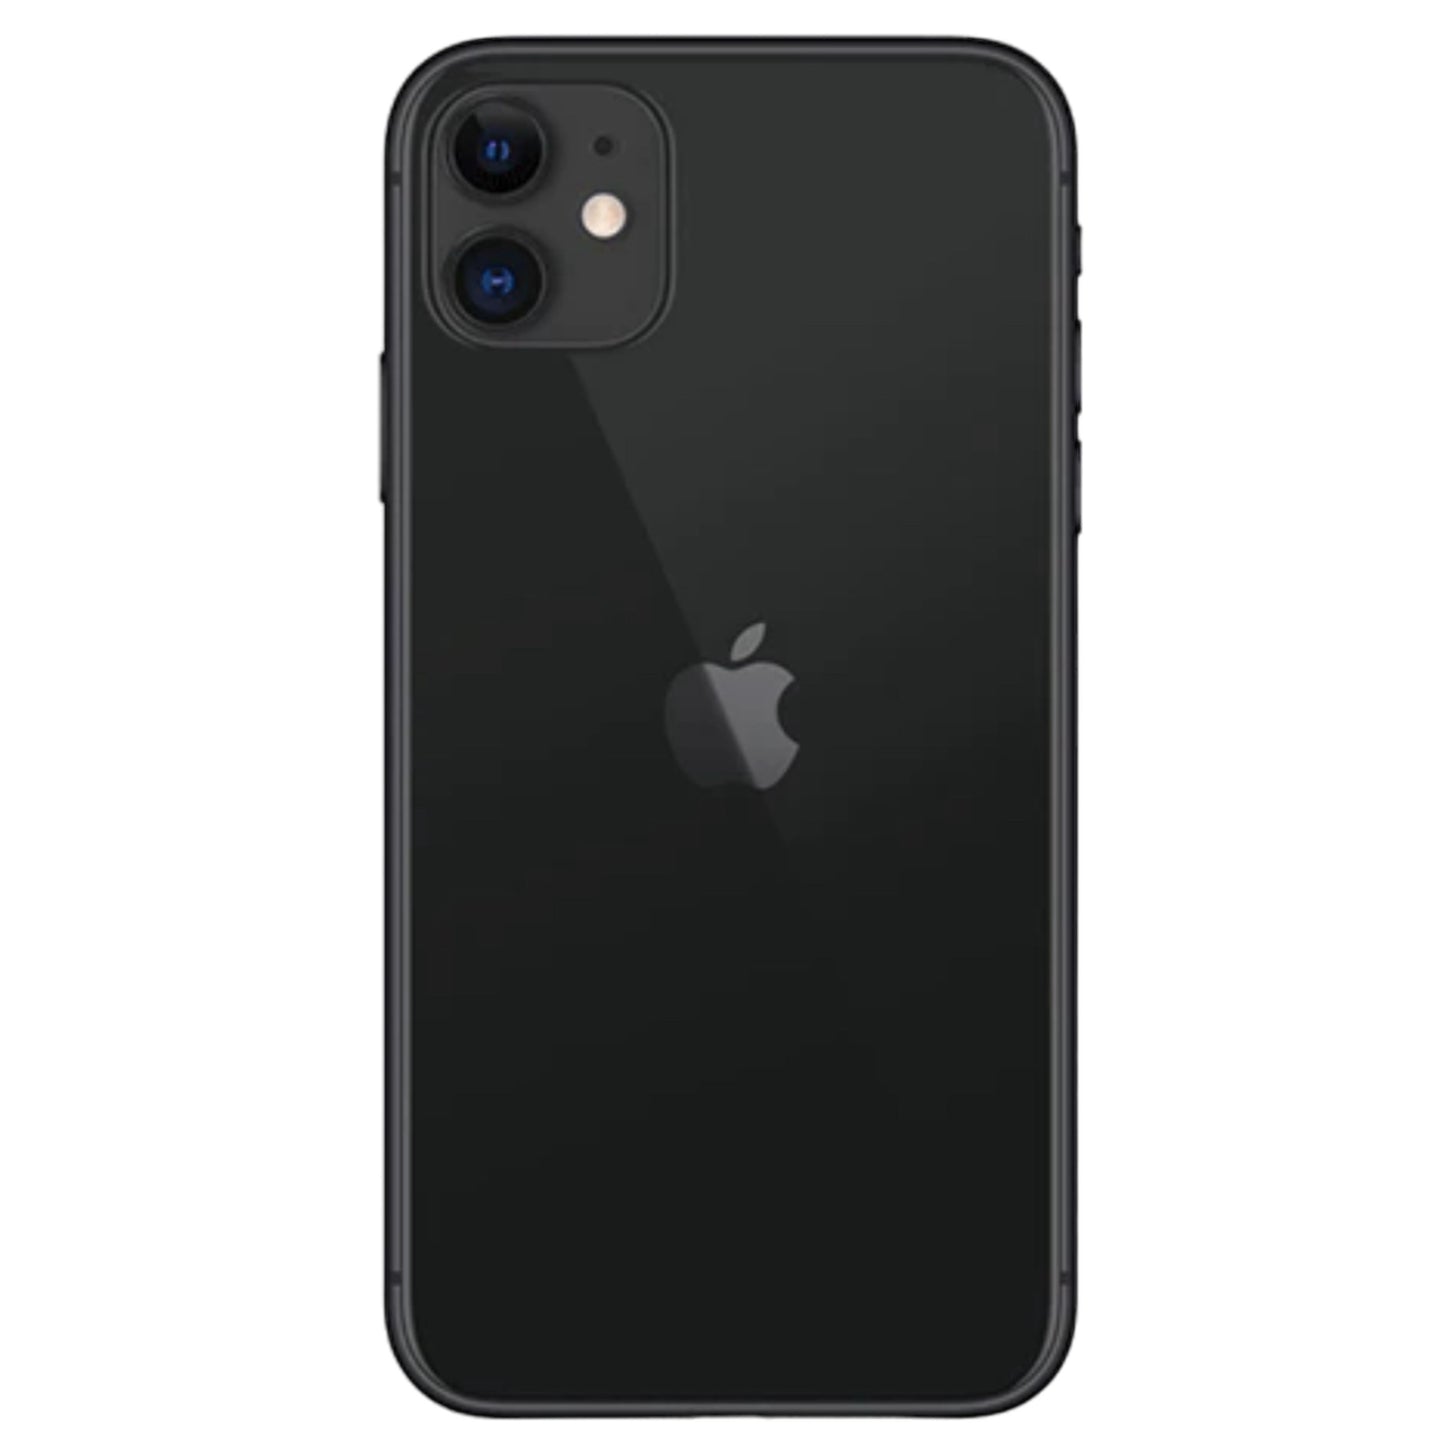 iPhone 11 Black 256GB (Unlocked) Pre-Owned